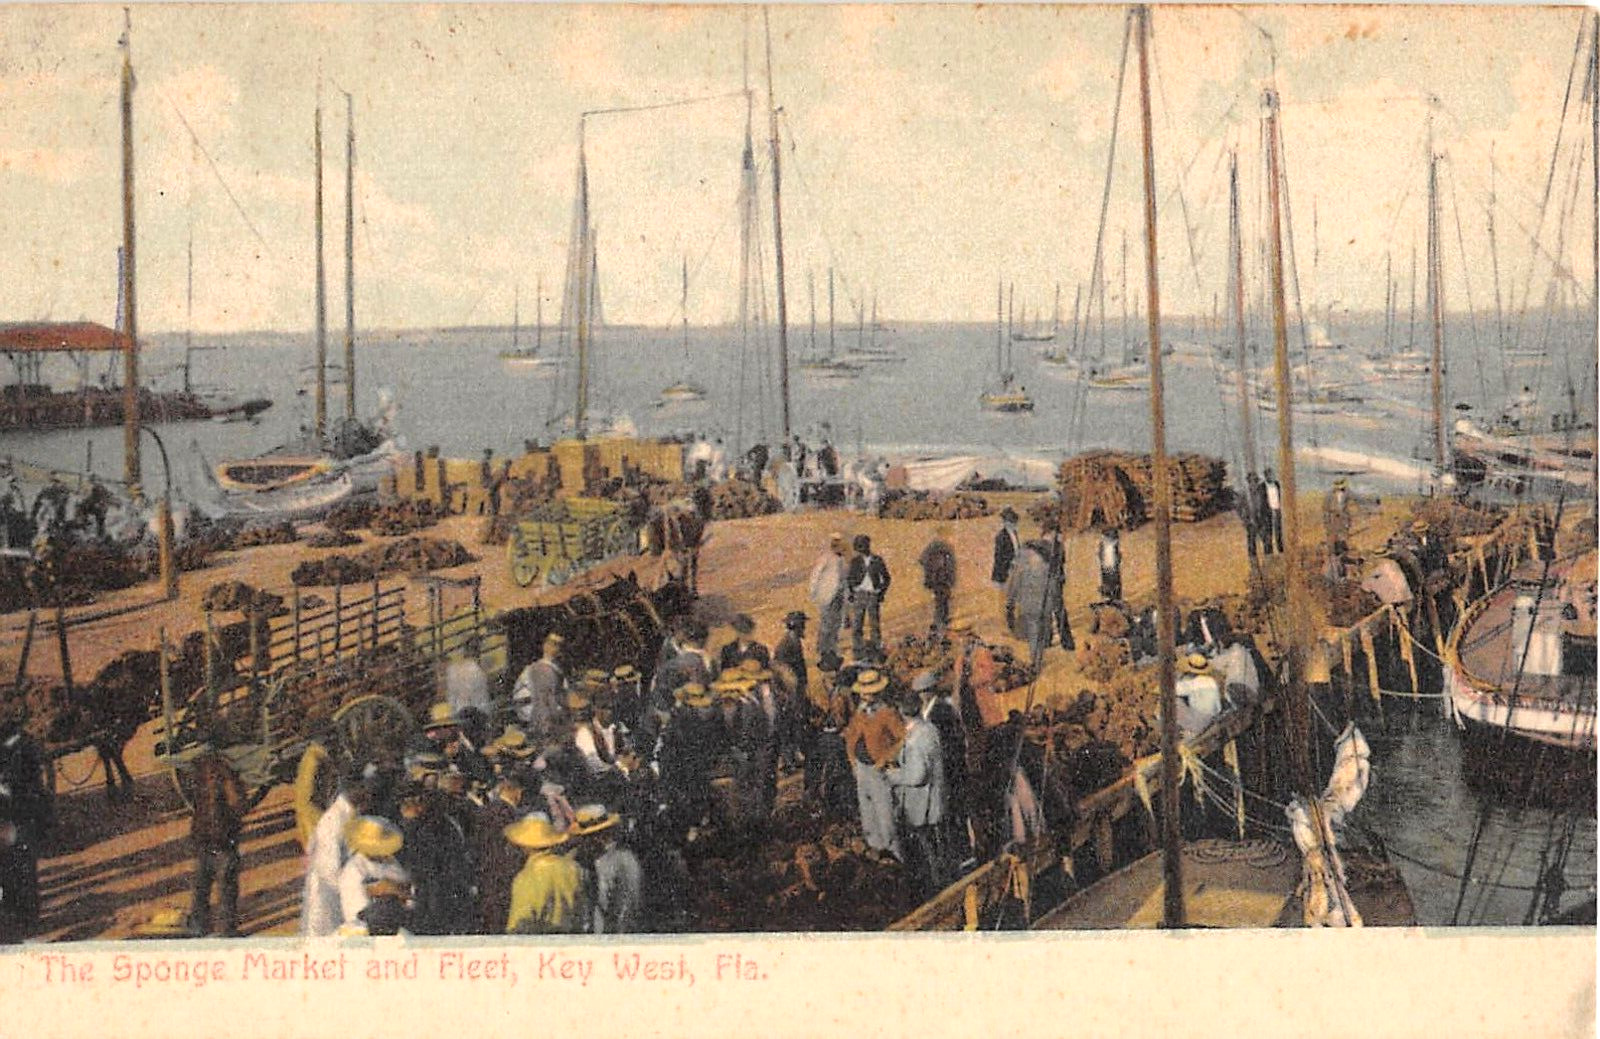 c.1908 Sponge Market & Fleet in Harbor Key West FL post card